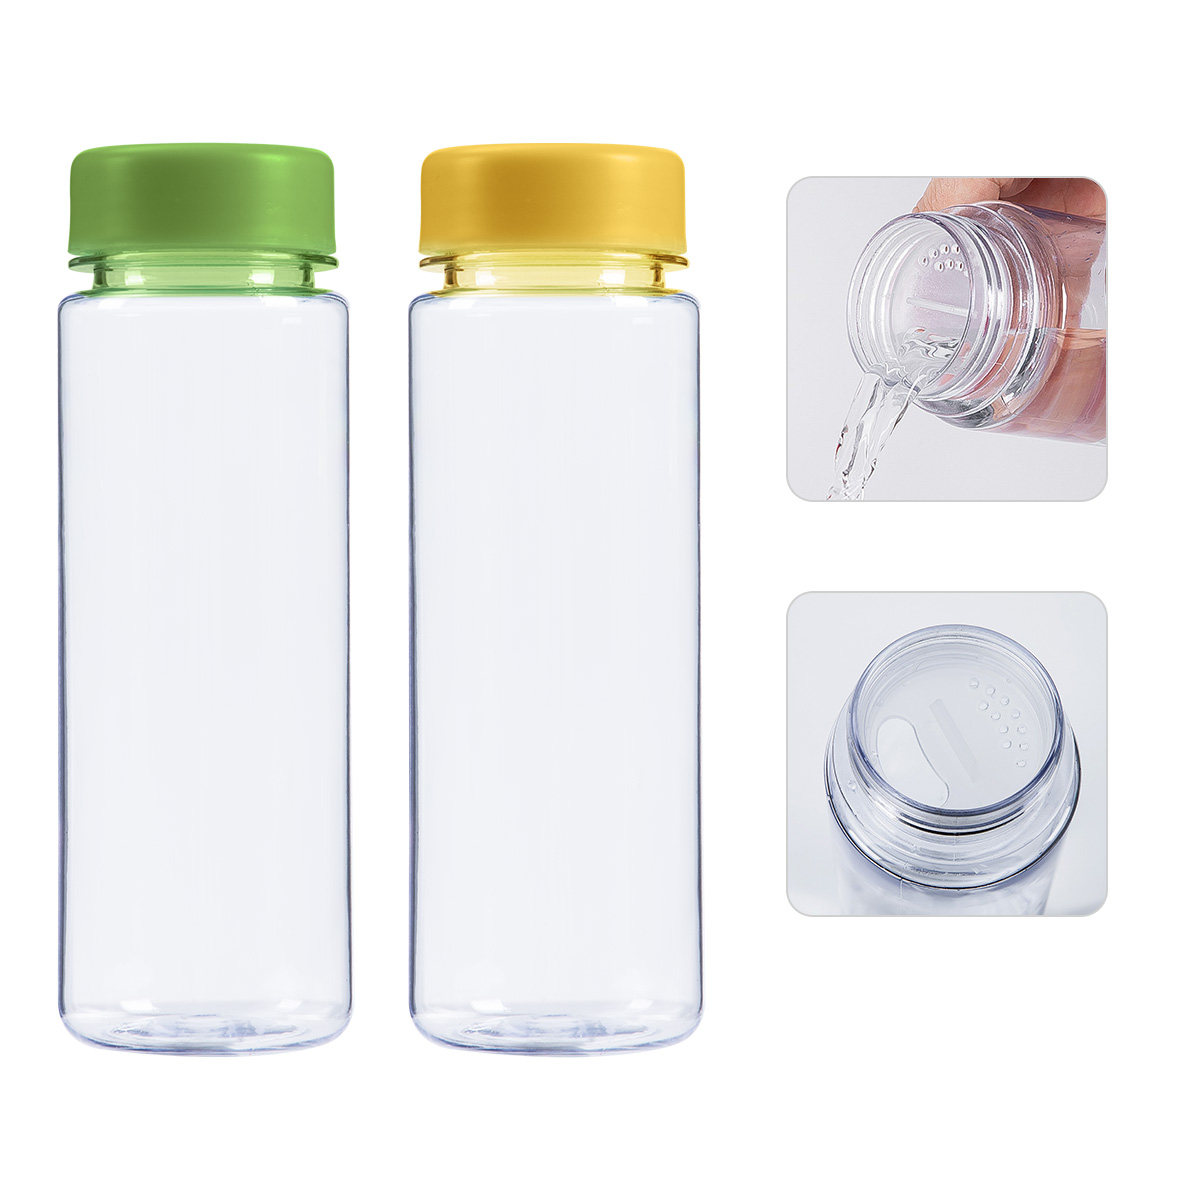 Hvordan kan vandflasker genbruges